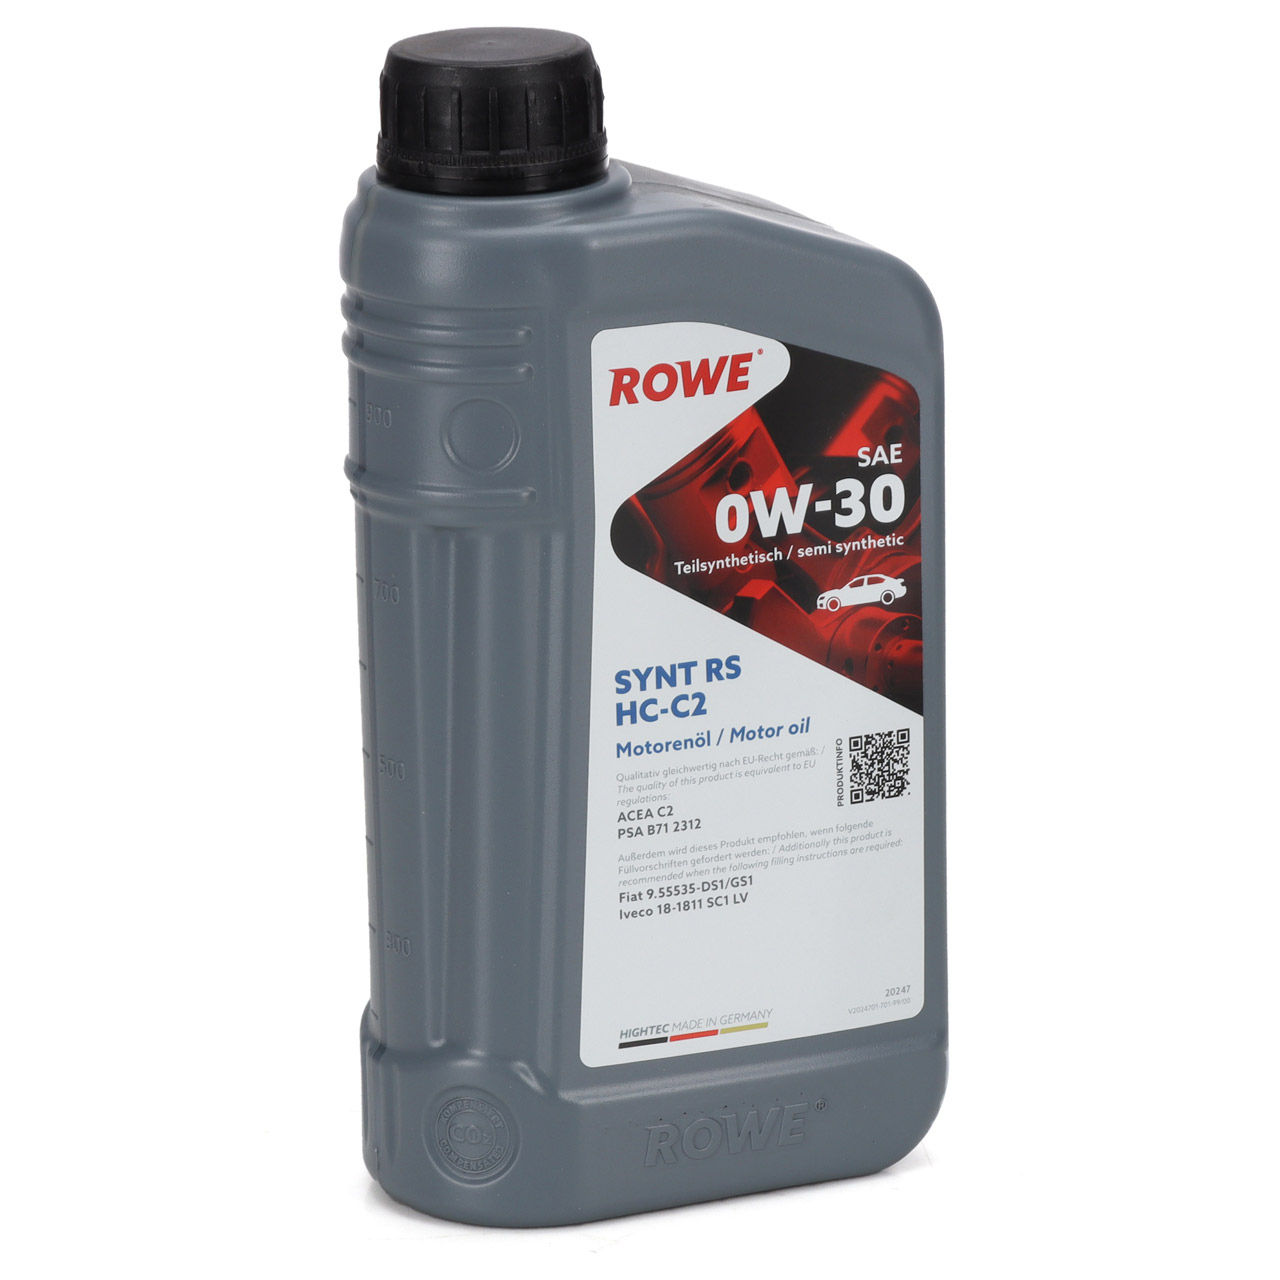 7L 7 Liter ROWE SYNT RS HC-C2 0W-30 Motoröl Öl ACEA C2 PSA B712312 Fiat 9.55535-DS1/GS1